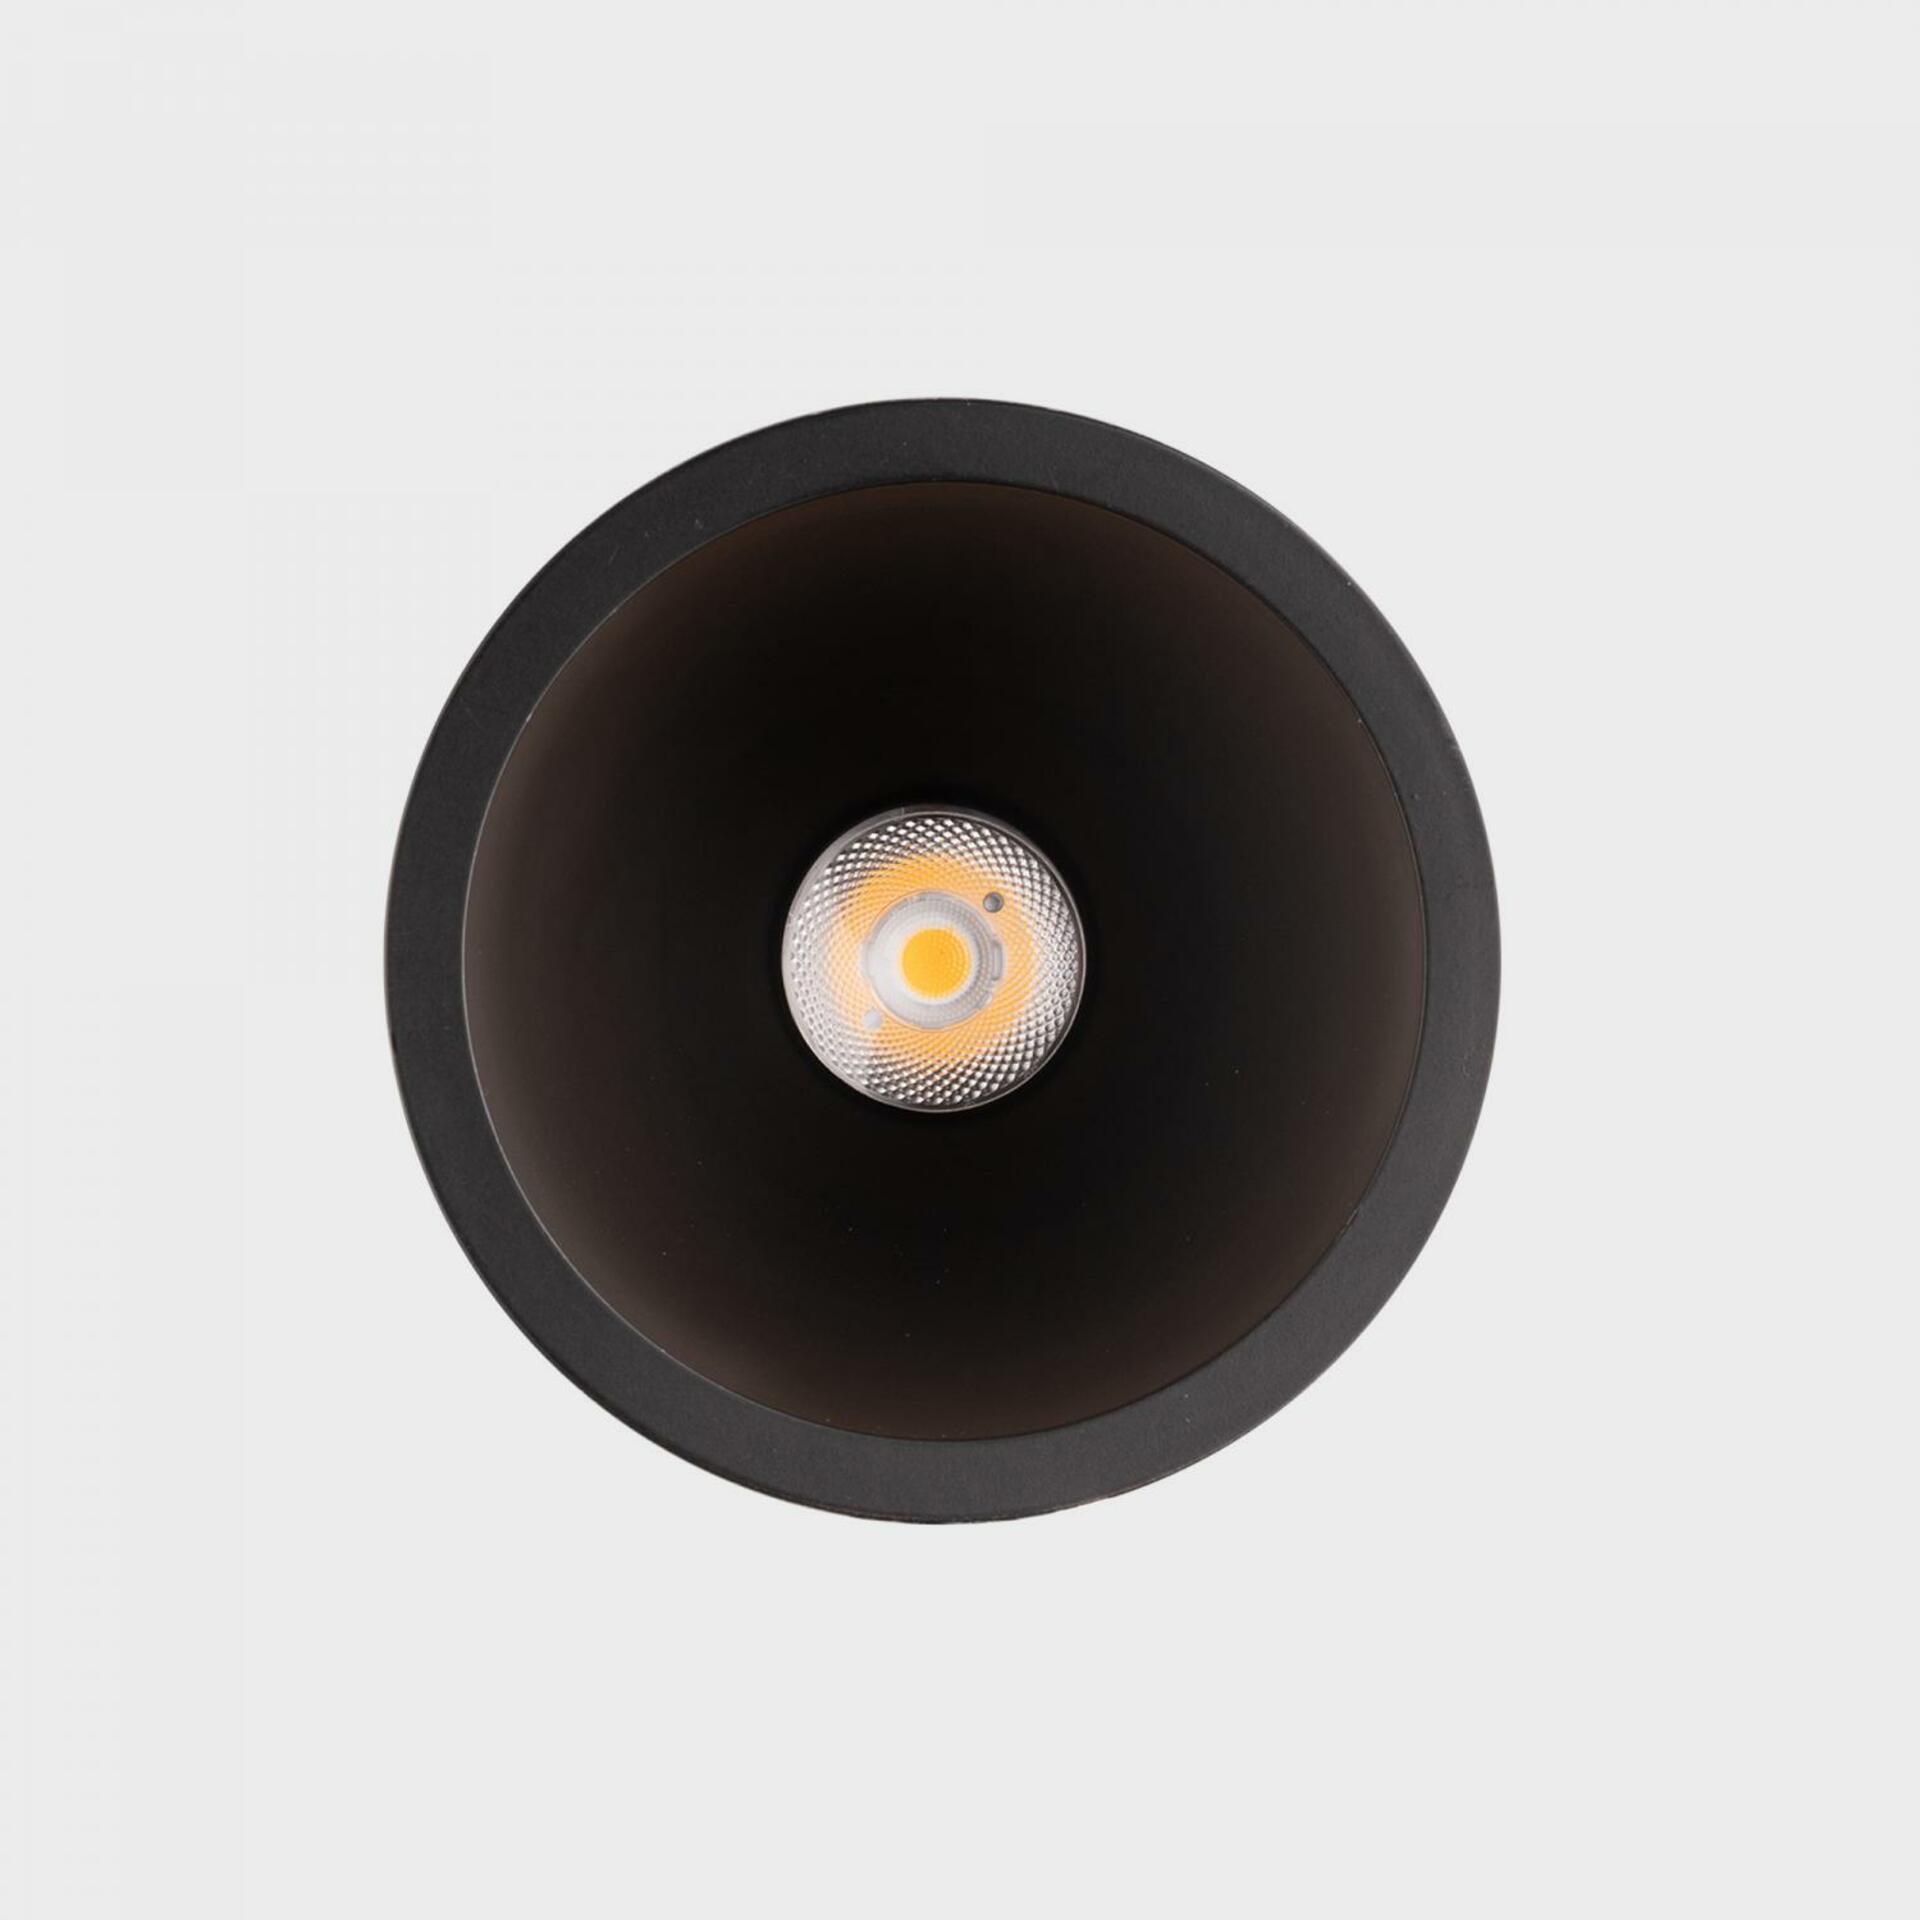 KOHL LIGHTING KOHL-Lighting NOON zapuštěné svítidlo s rámečkem pr.93 mm černá 38° 10 W  CRI 80 3000K 1.10V